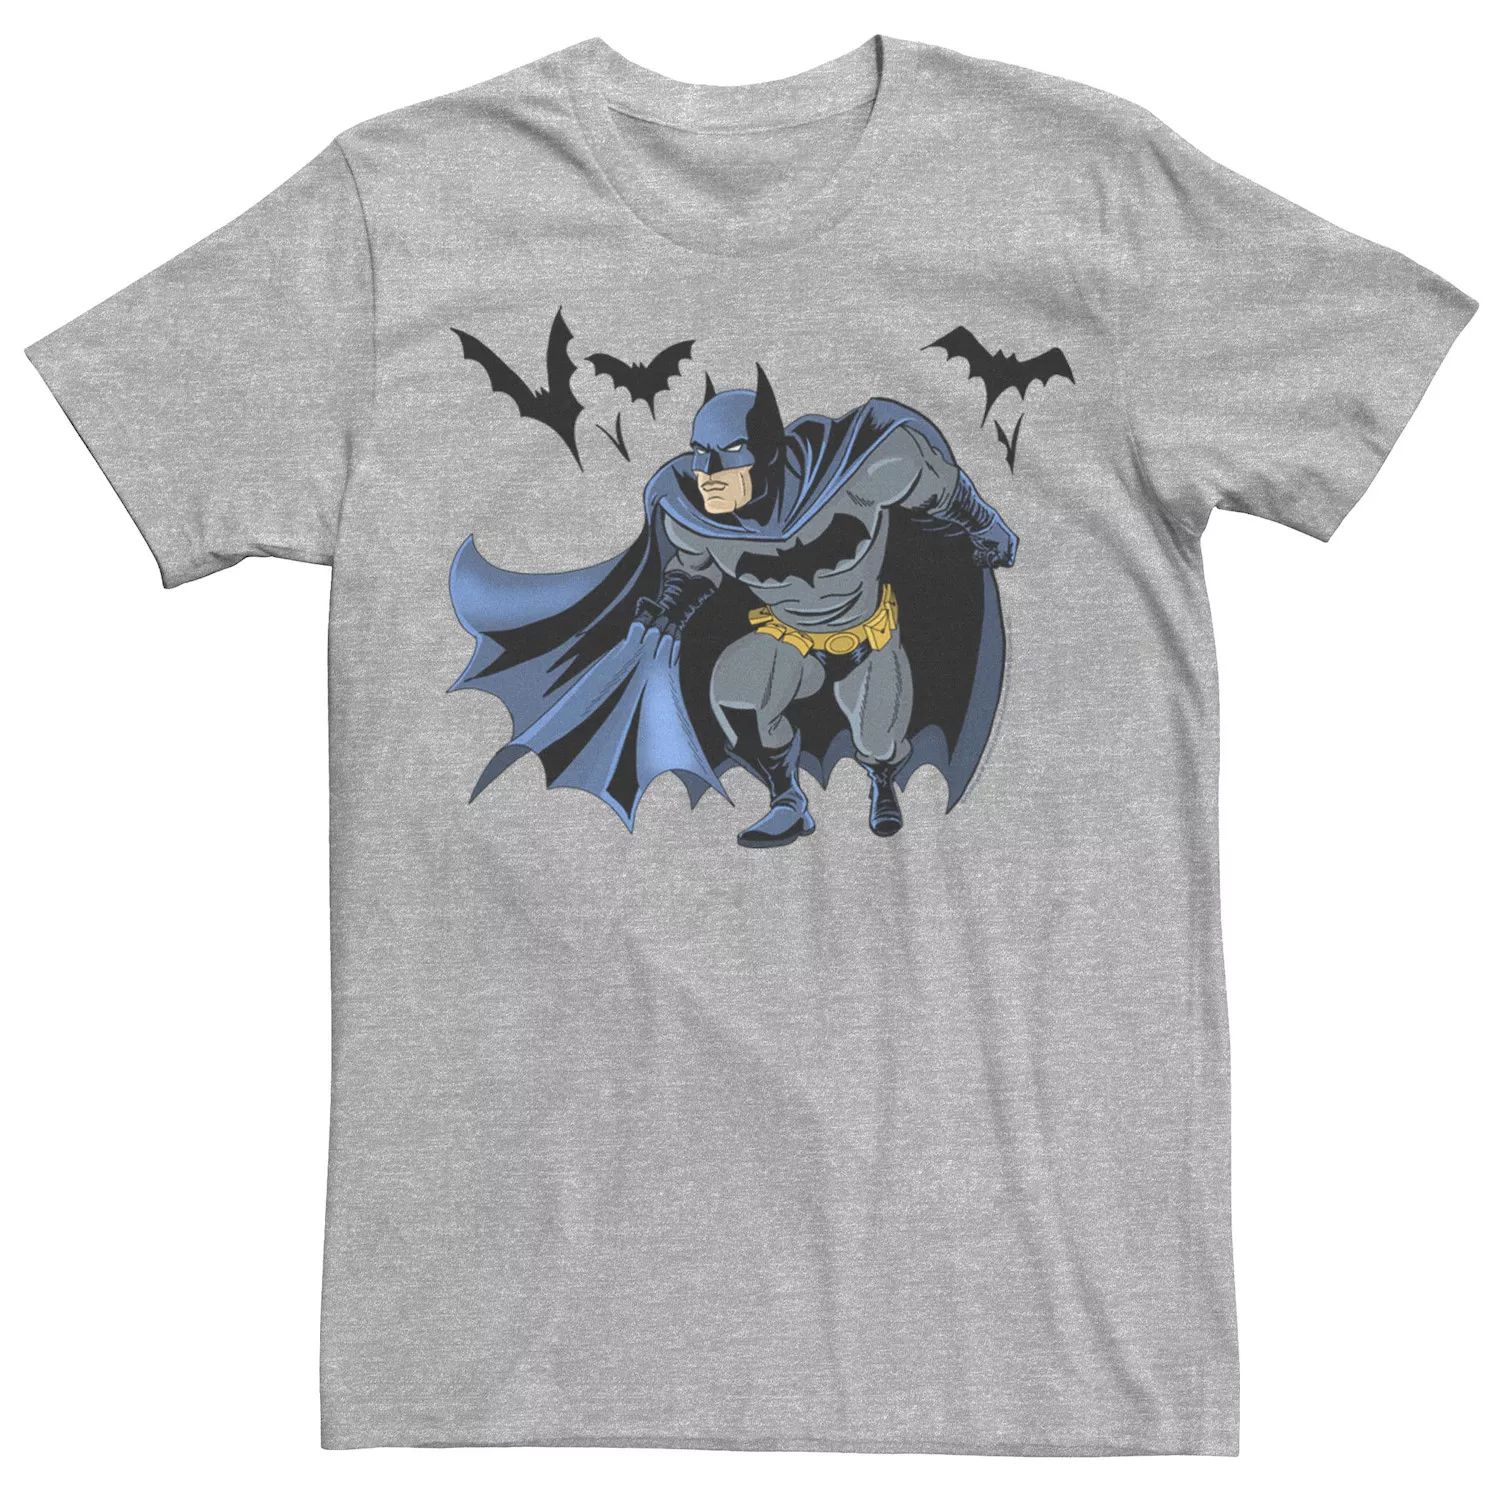 Мужская футболка DC Fandome Batman Crouch с портретом Licensed Character crouch b recursion